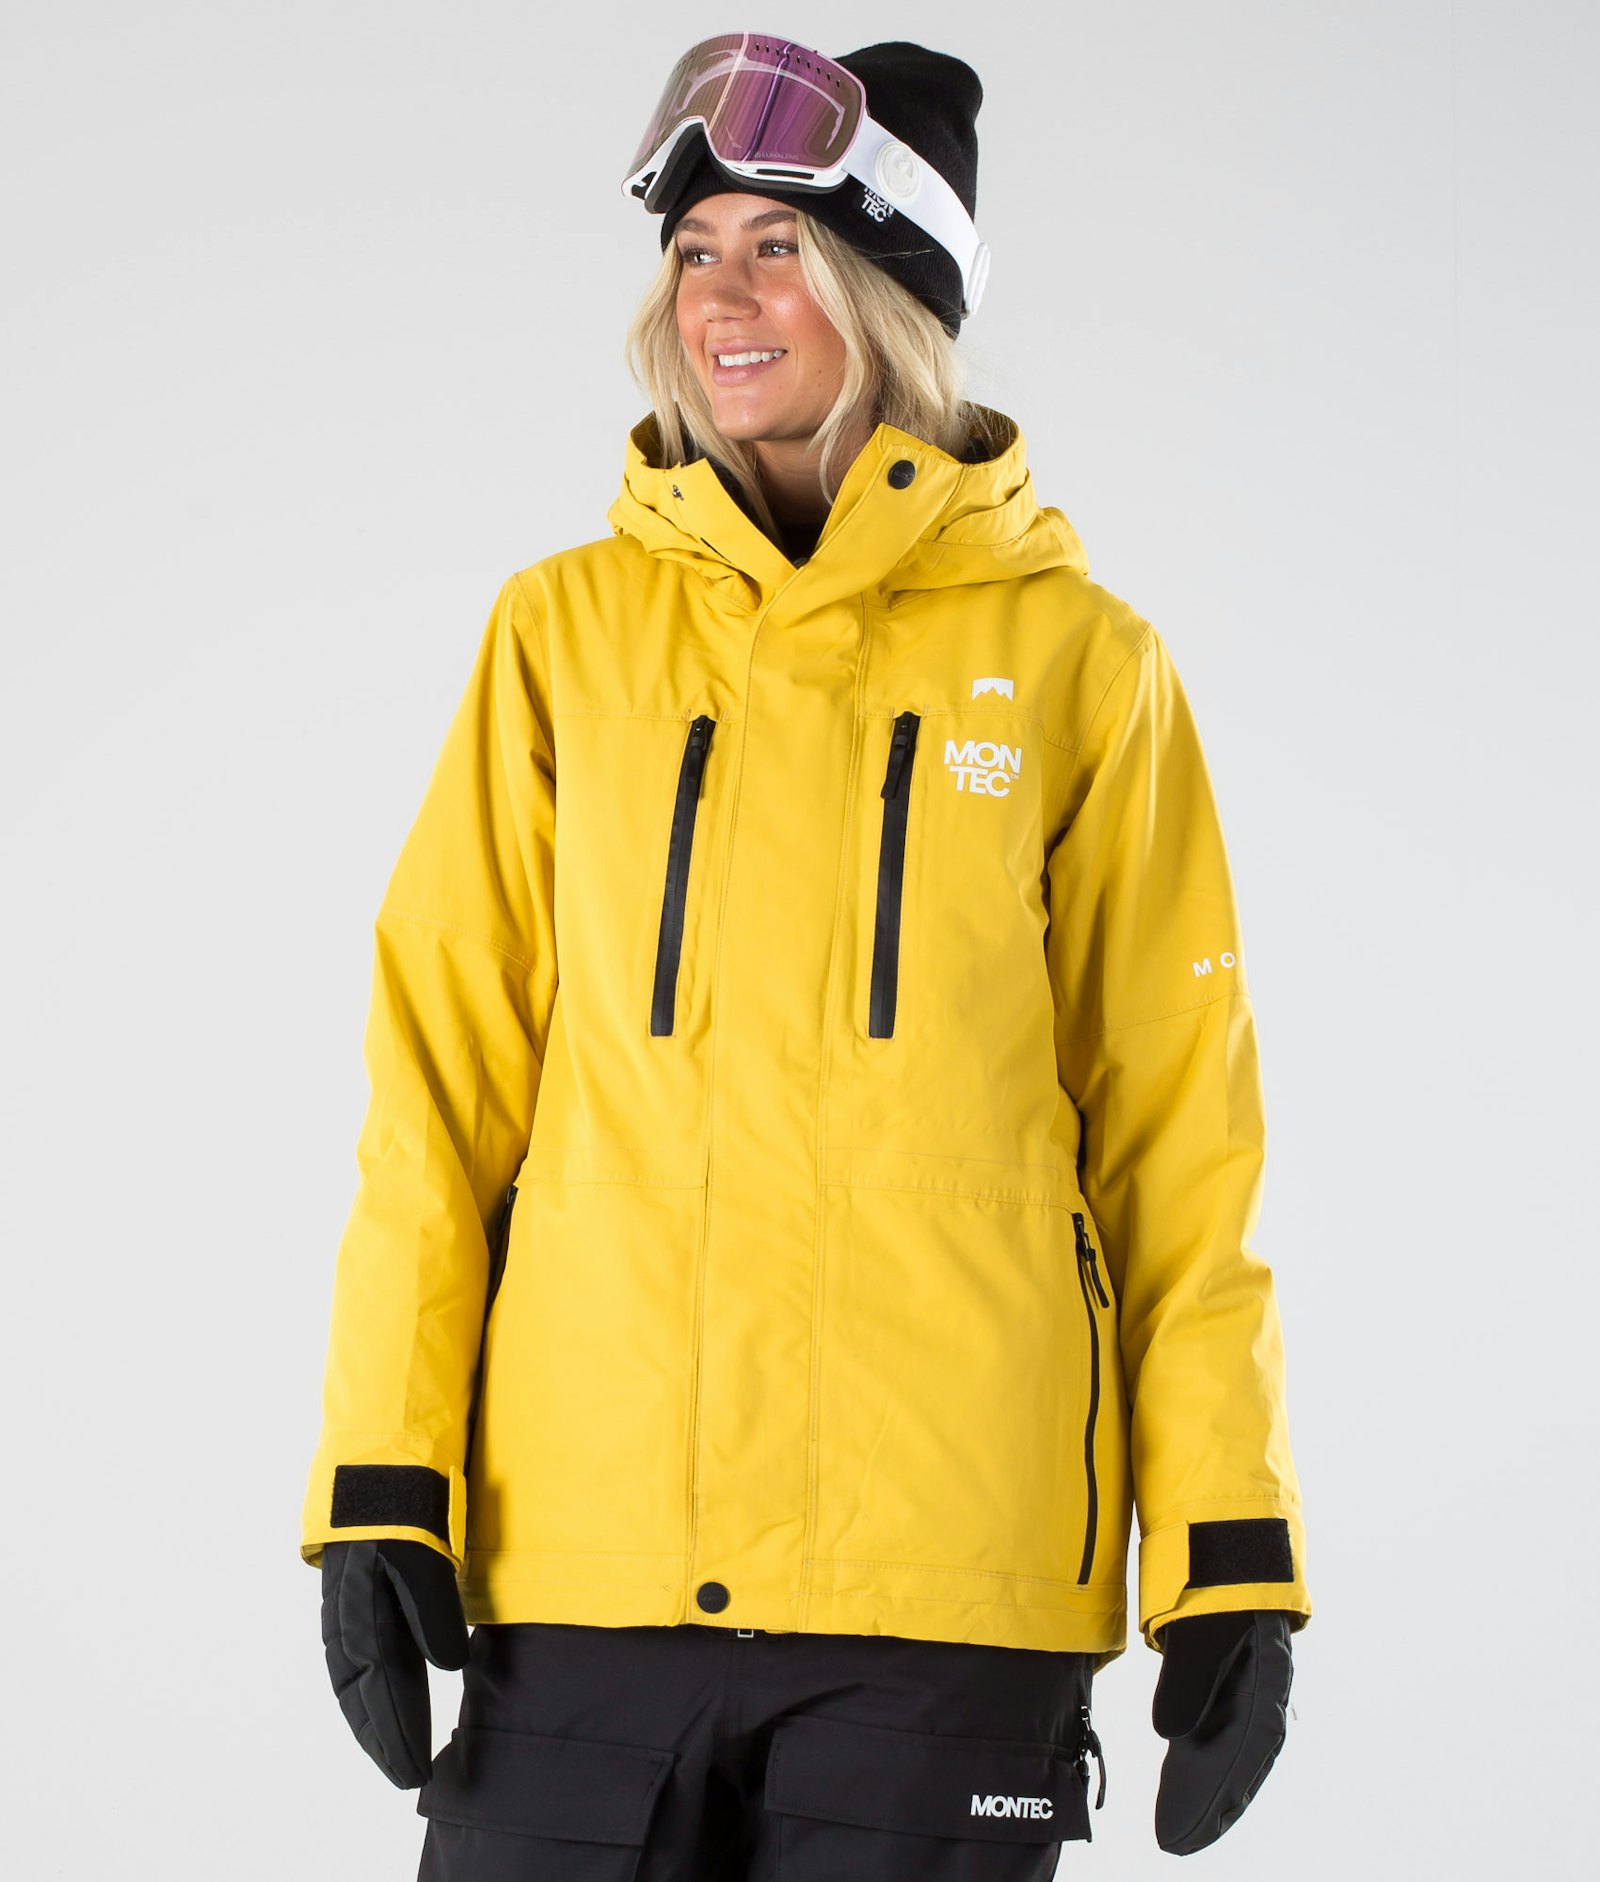 Fawk W 2019 Kurtka Snowboardowa Kobiety Yellow